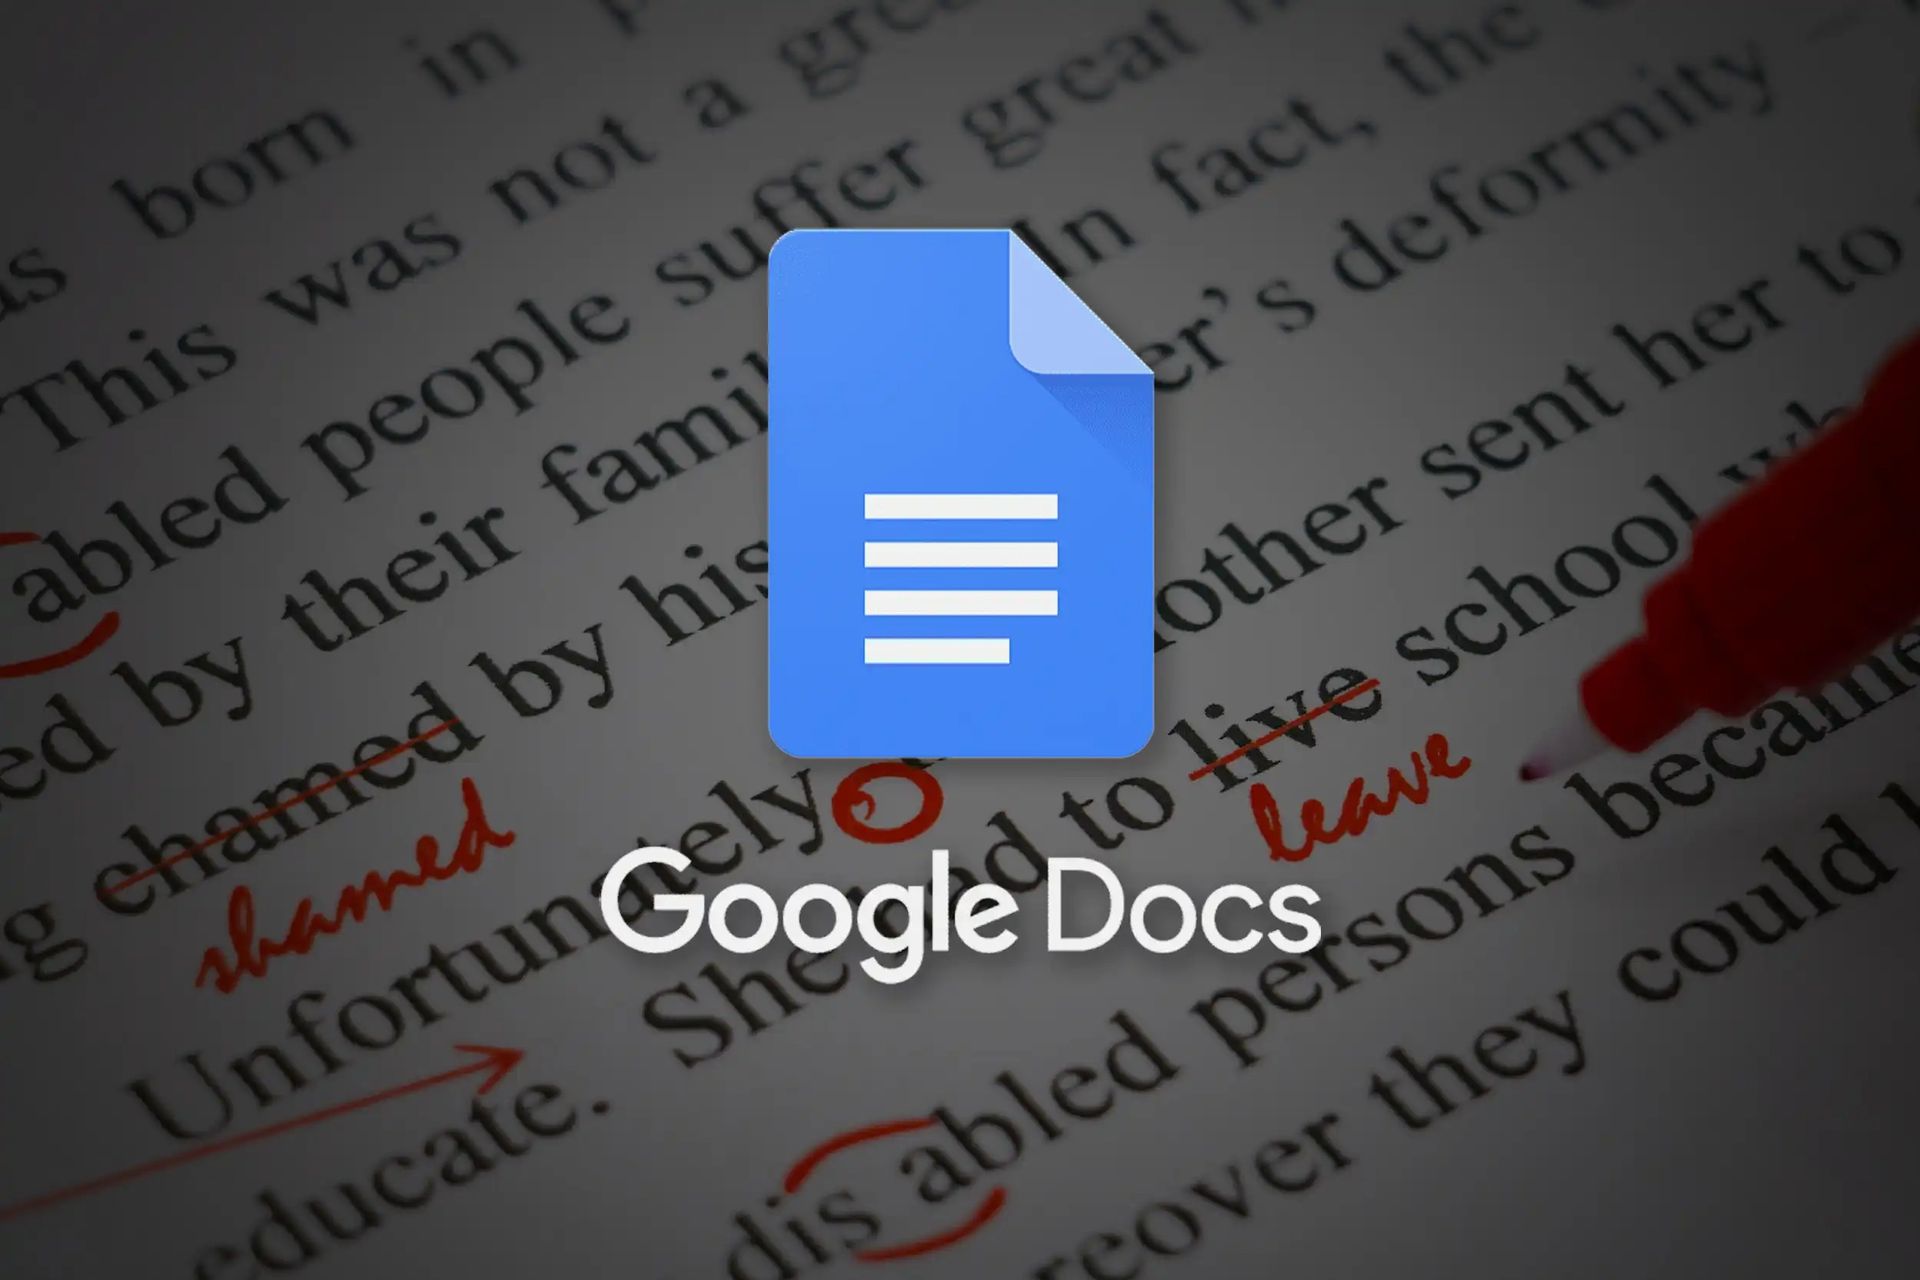 Lassen Sie uns erklären, wie Sie tiefgestellte Texte in Google Docs erstellen, da es wichtig ist, Text richtig zu formatieren, um ein Dokument zu erstellen, das sowohl informativ als auch für Ihre Leser leicht zu verstehen ist.